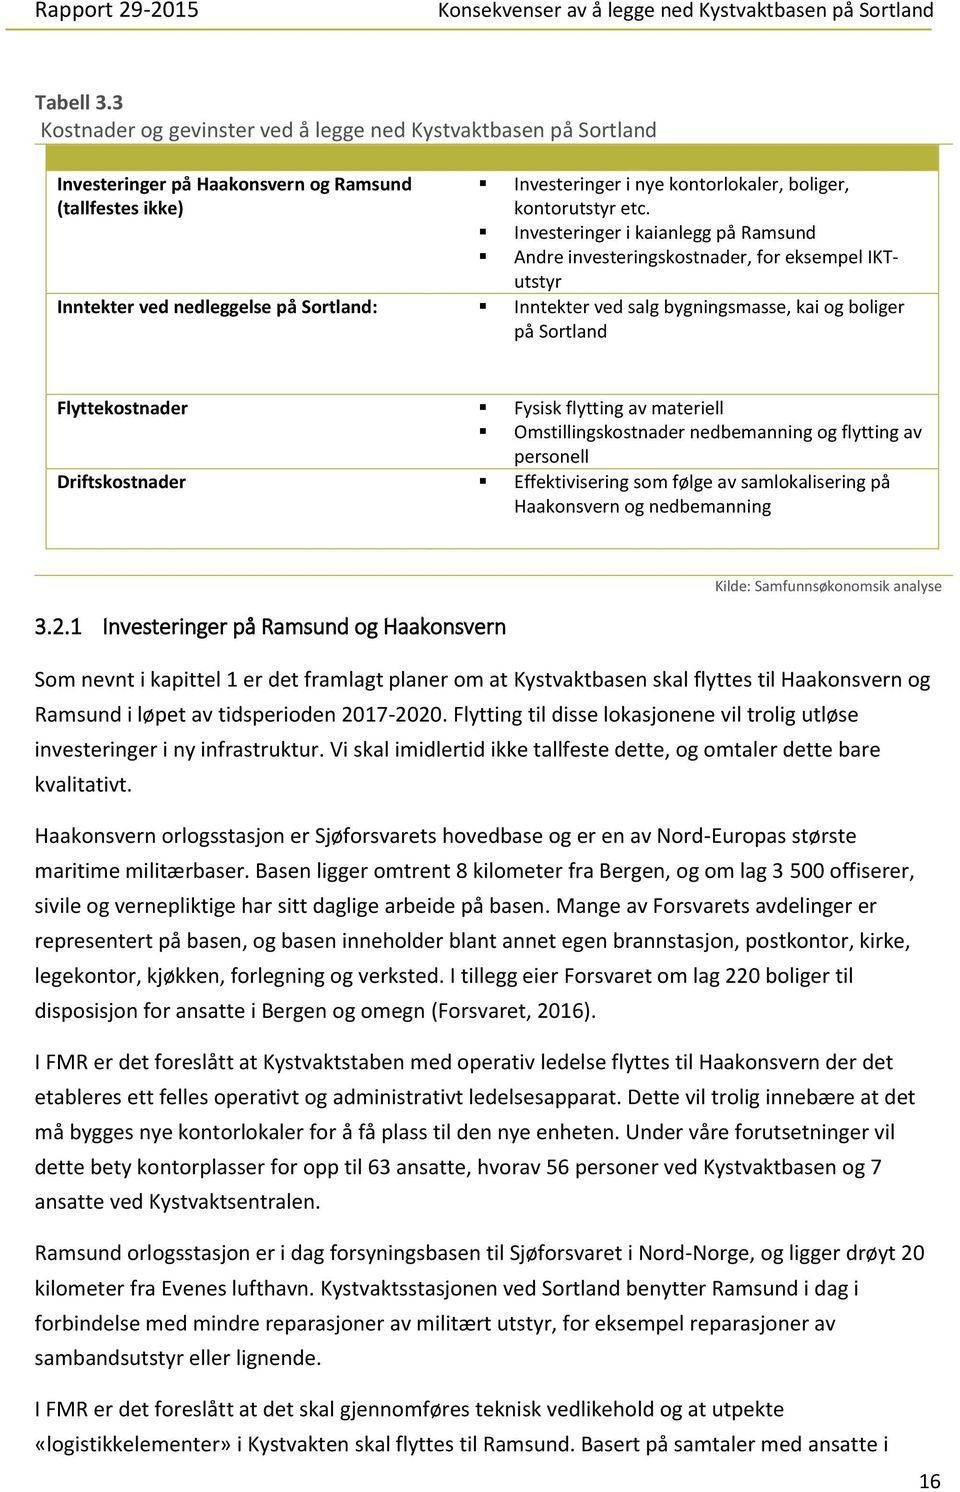 Flyttekostnader Fysisk flytting av materiell Omstillingskostnader nedbemanning og flytting av personell Driftskostnader Effektivisering som følge av samlokalisering på Haakonsvern og nedbemanning